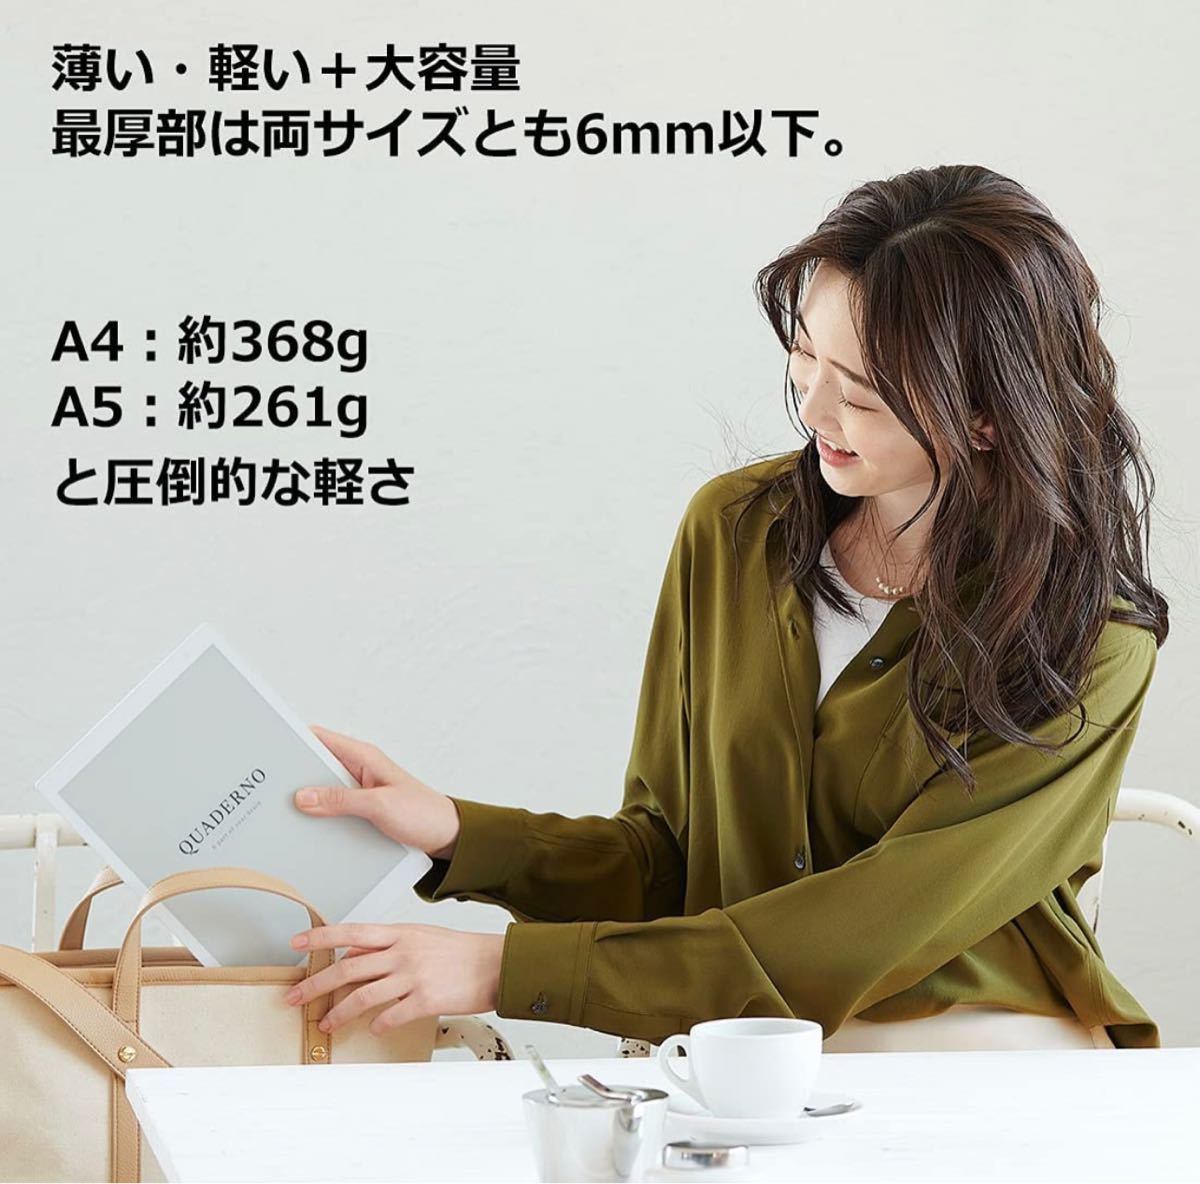  Fujitsu 10.3 type гибкий электронный бумага QUADERNO A5 размер / FMVDP51 белый новый товар не использовался бесплатная доставка стандартный товар 